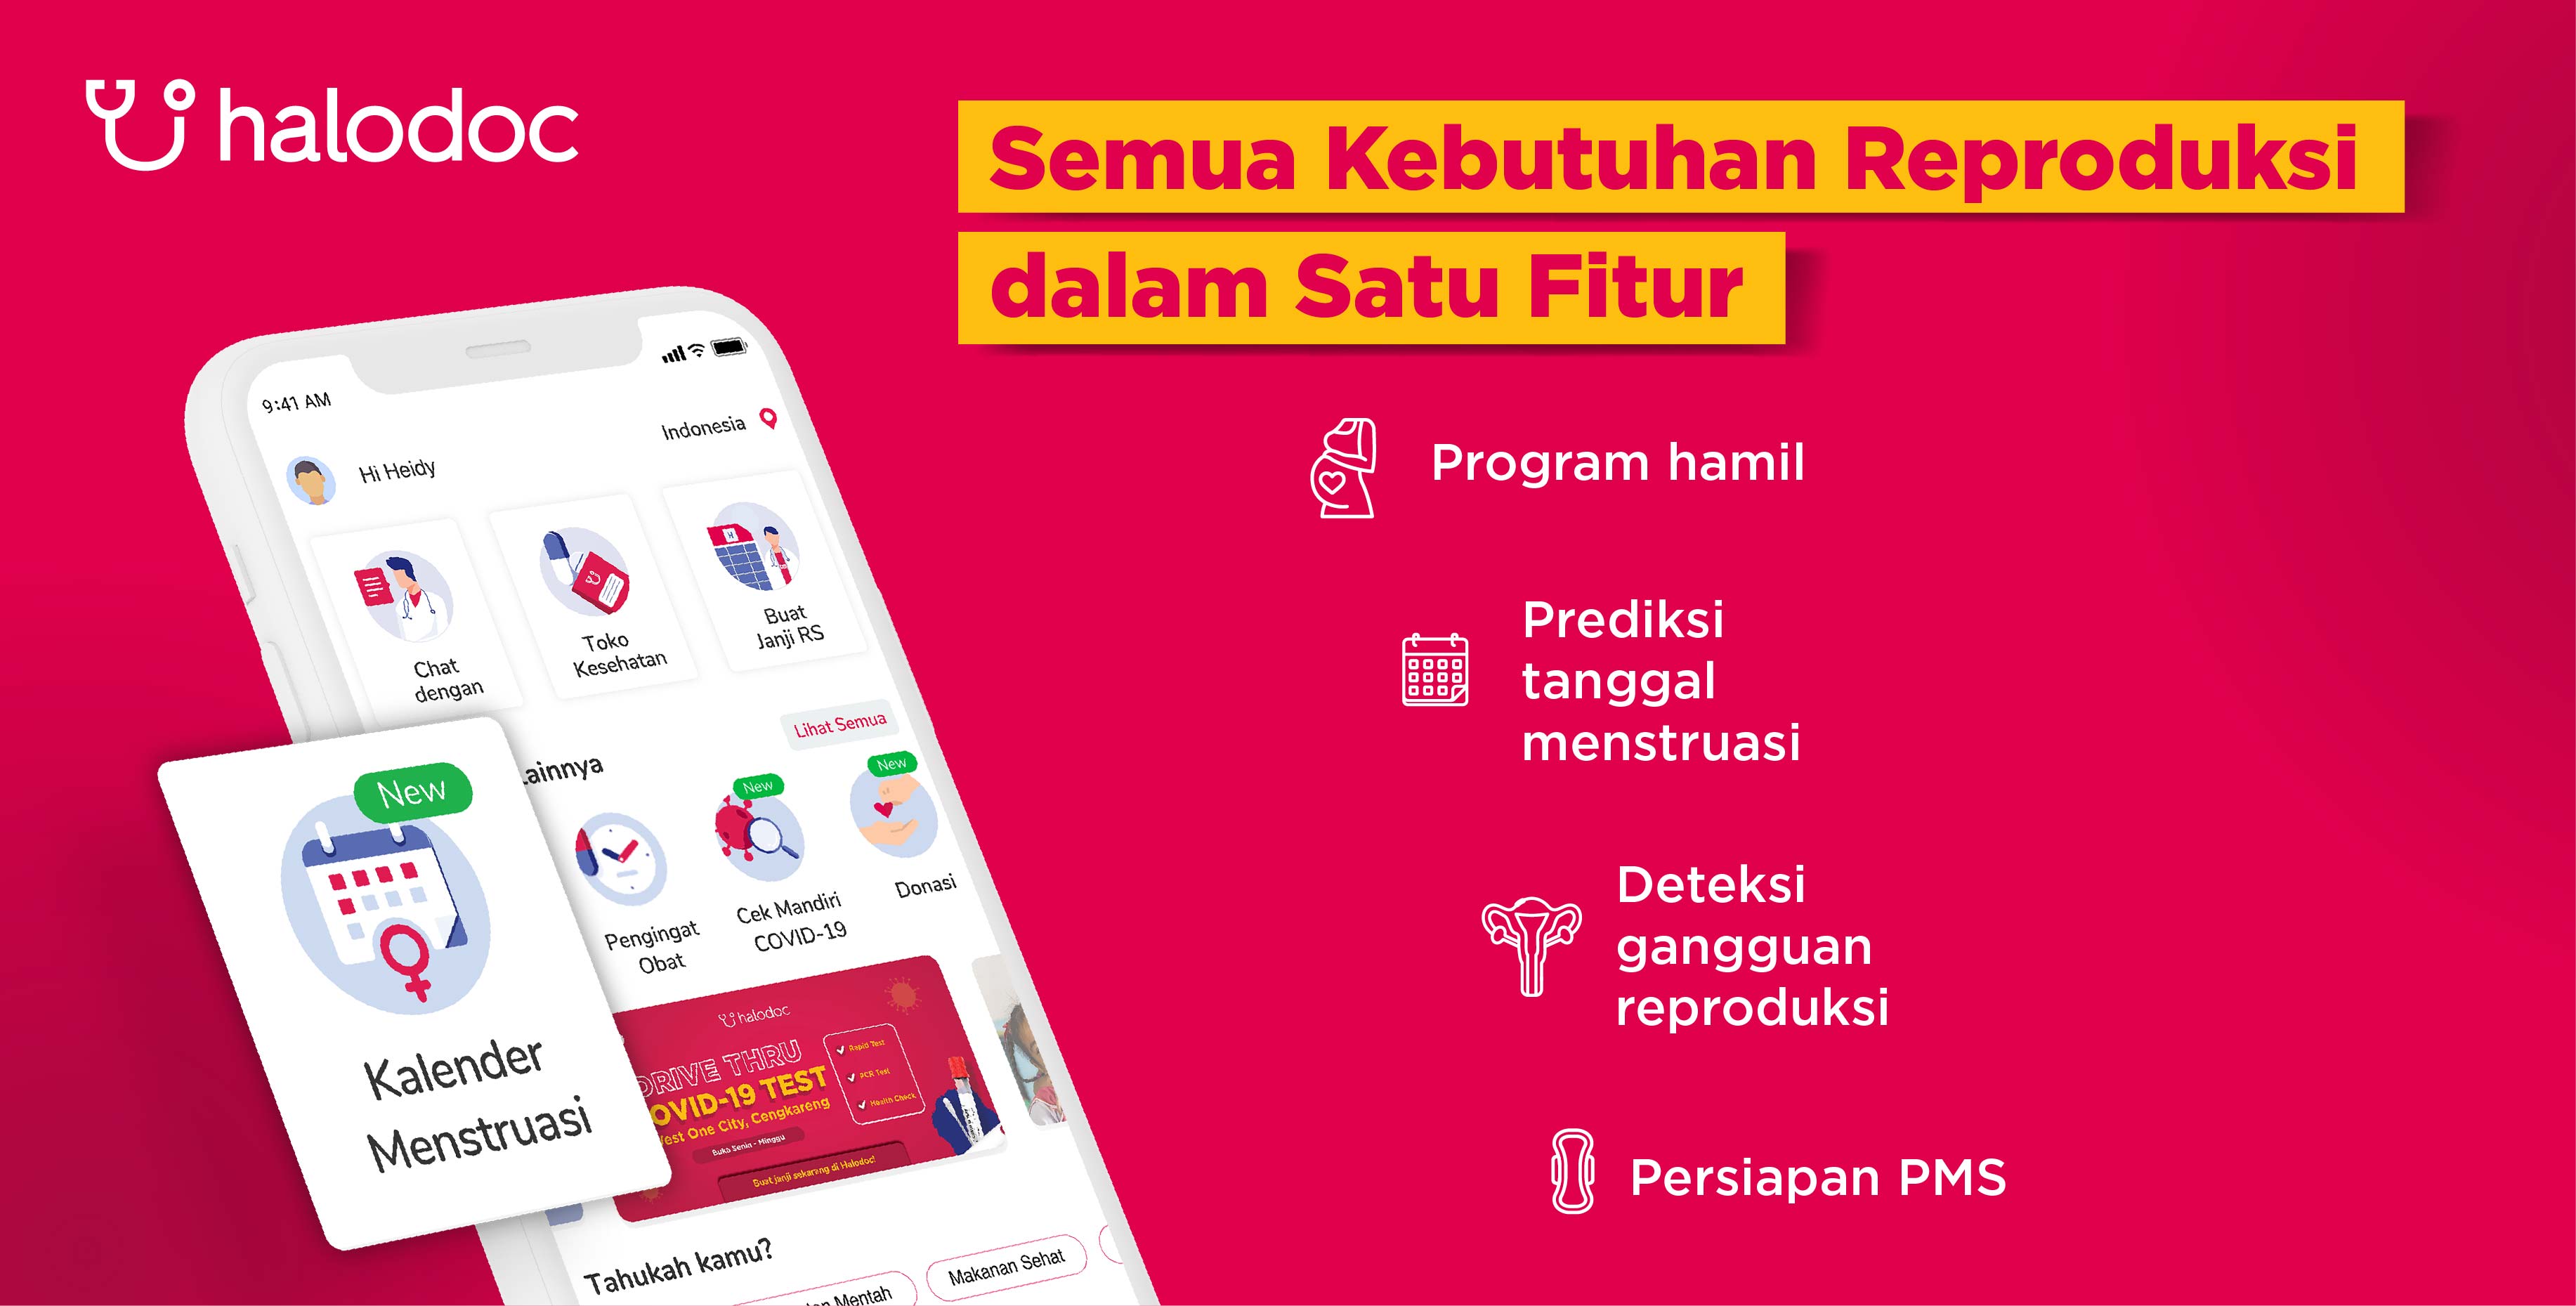 Veröffentlichung der Menstruationskalenderfunktion und wird zur umfassendsten Gesundheitsanwendung in Indonesien